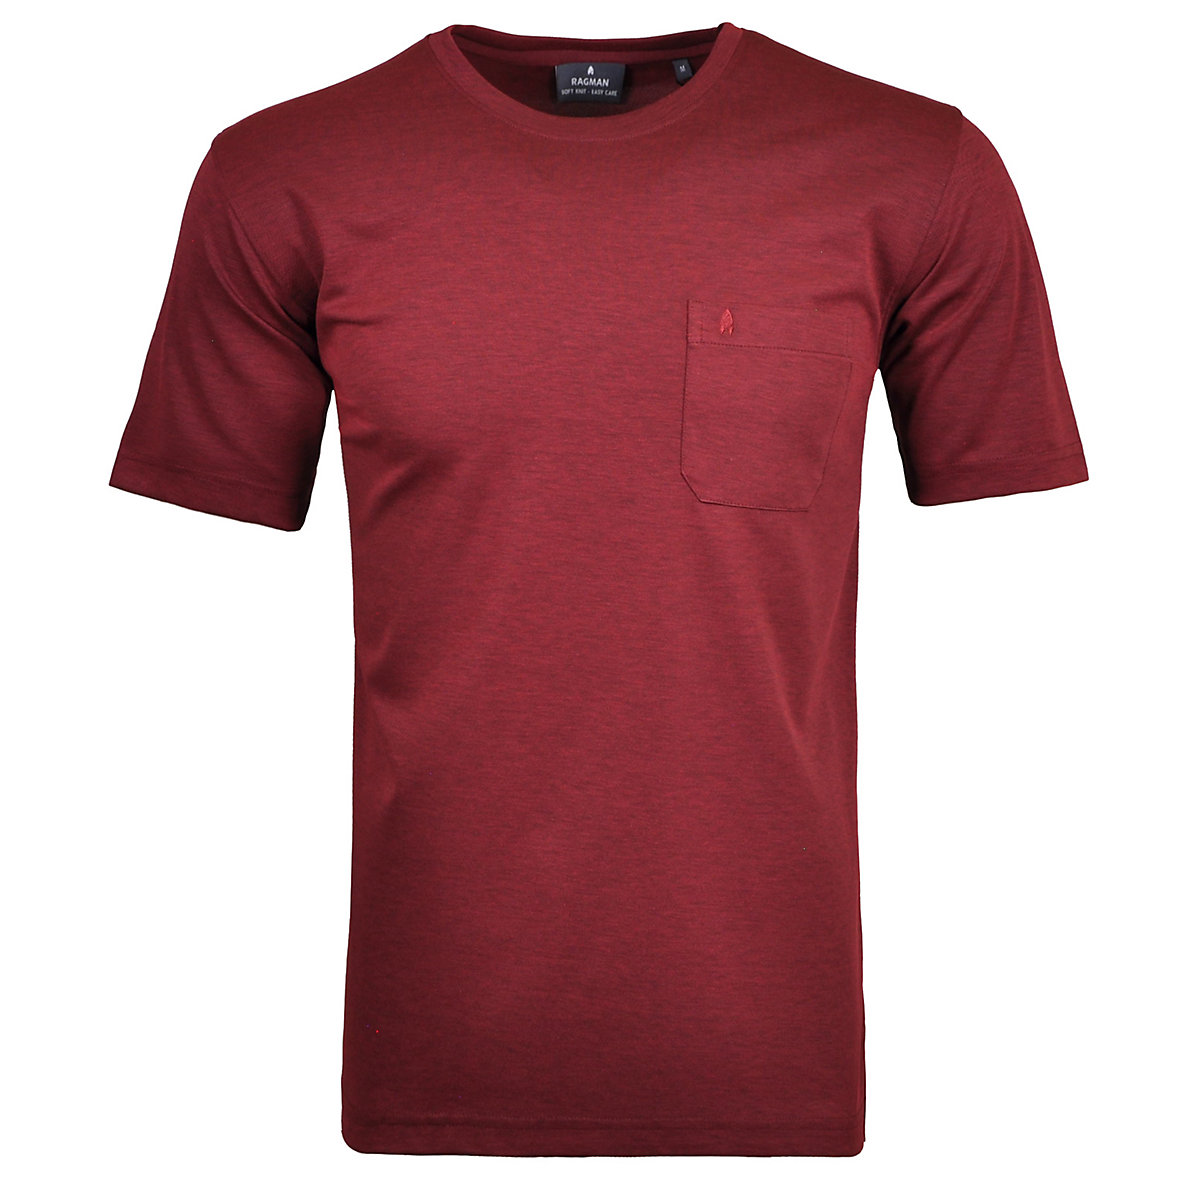 RAGMAN Softknit T-Shirt Rundhals mit Brusttasche T-Shirts rot